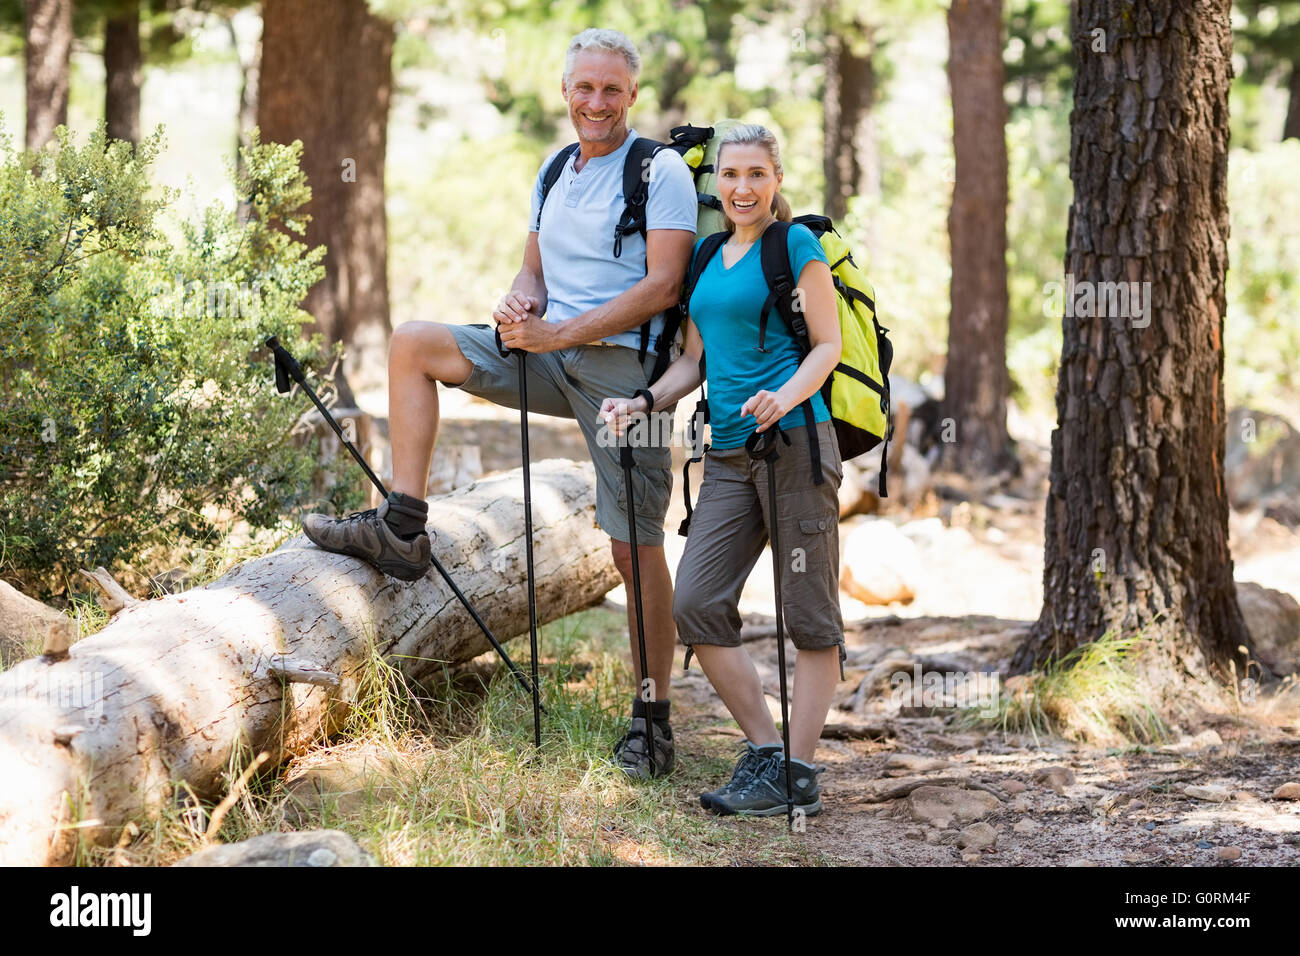 Couple smiling and posing lors d'une randonnée pédestre Banque D'Images